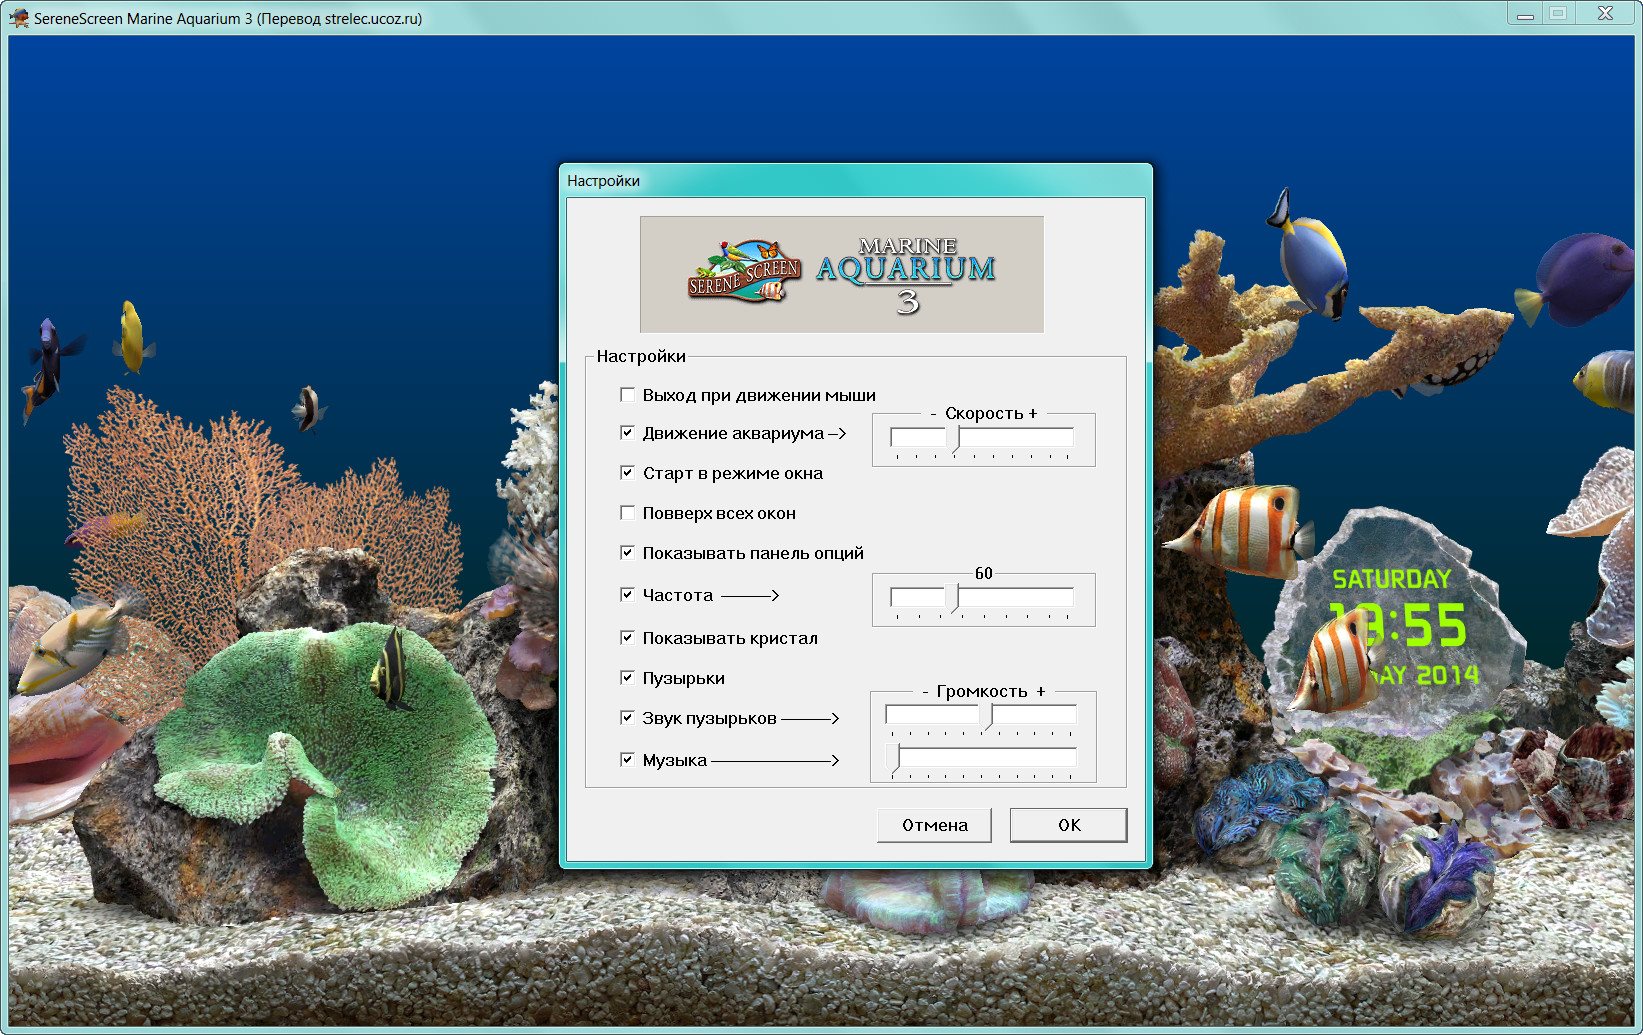 Marine aquarium. Заставка Marine Aquarium 3. Морской аквариум. Программа для аквариума. Marine Aquarium Screensaver.